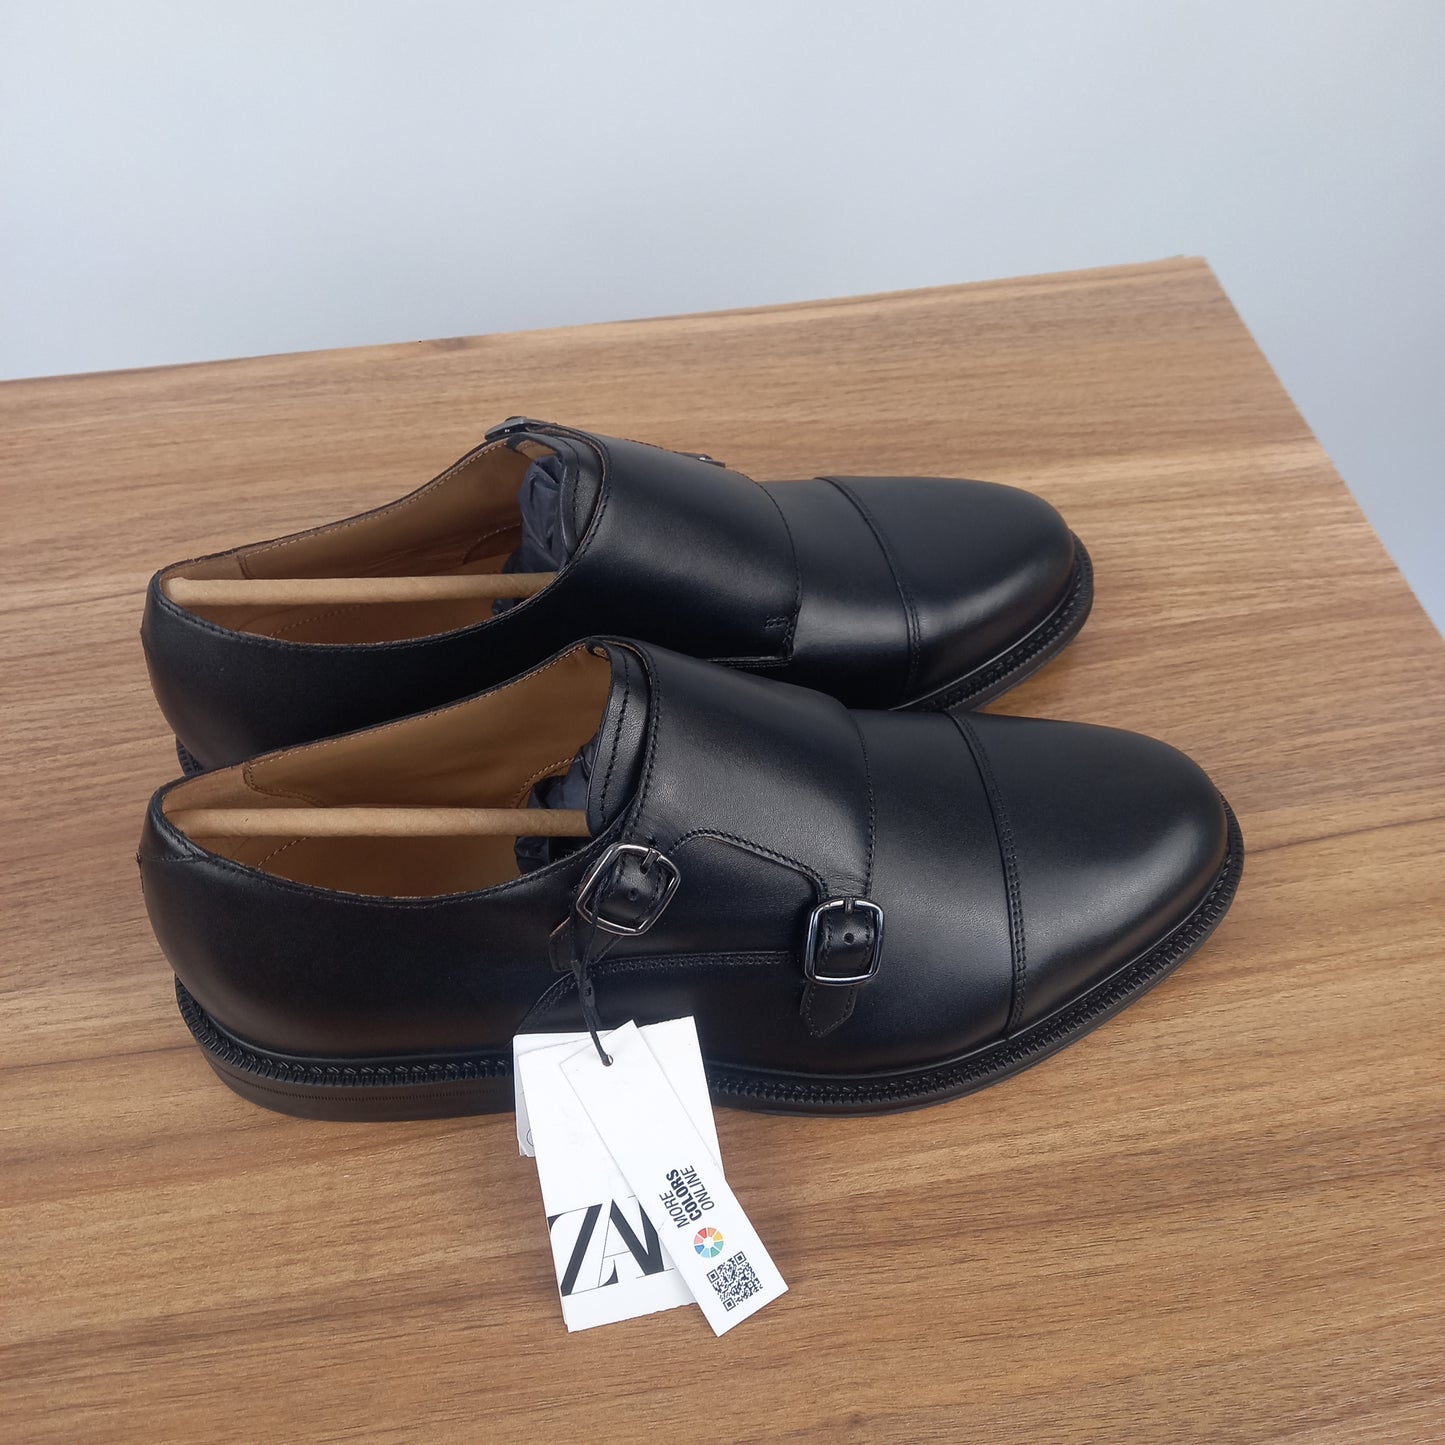 Zara leather monk shoe